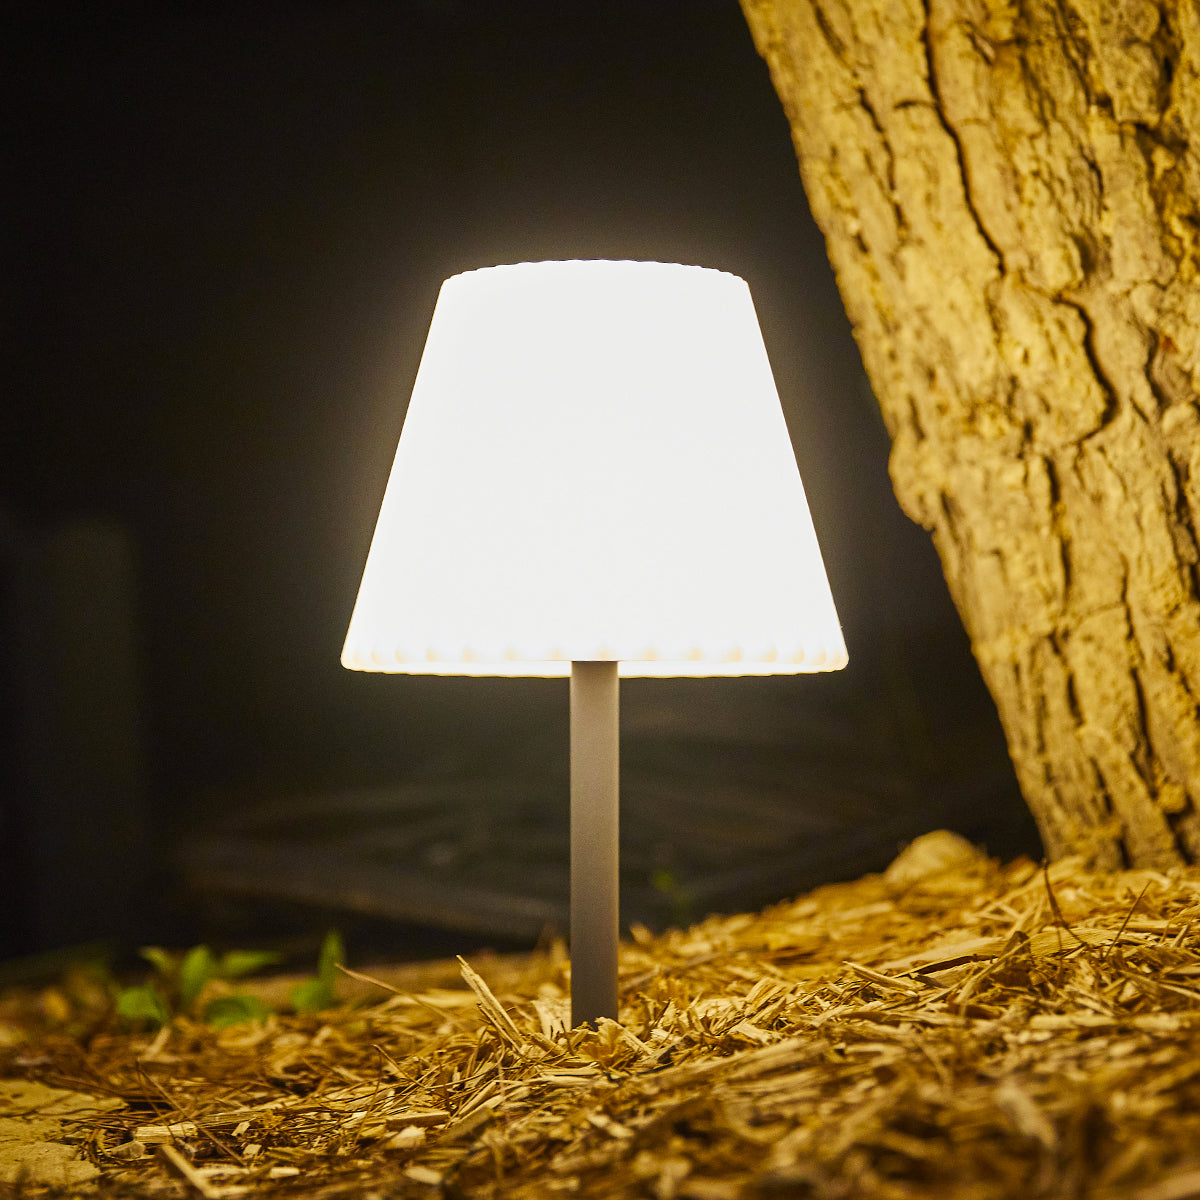 Lampe de table solaire 2 en 1 à planter ou à poser pied metal abat-jour ondulé LED blanc dimmable BOUFFANT H62cm